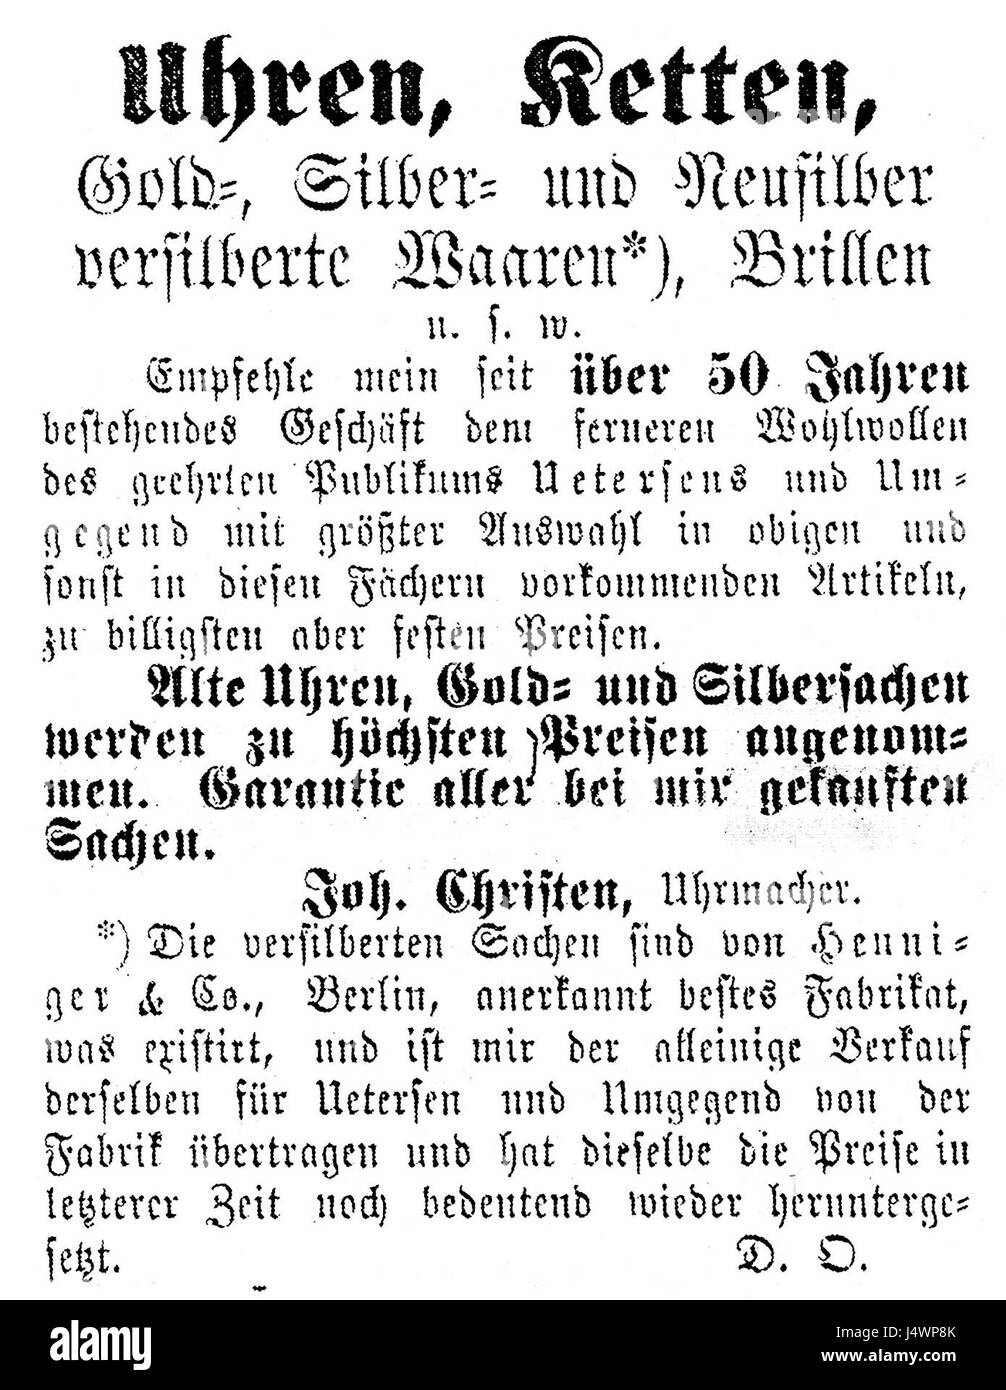 Uetersen Anzeige Joh. Christen Uhrmacher 1886 Stock Photo